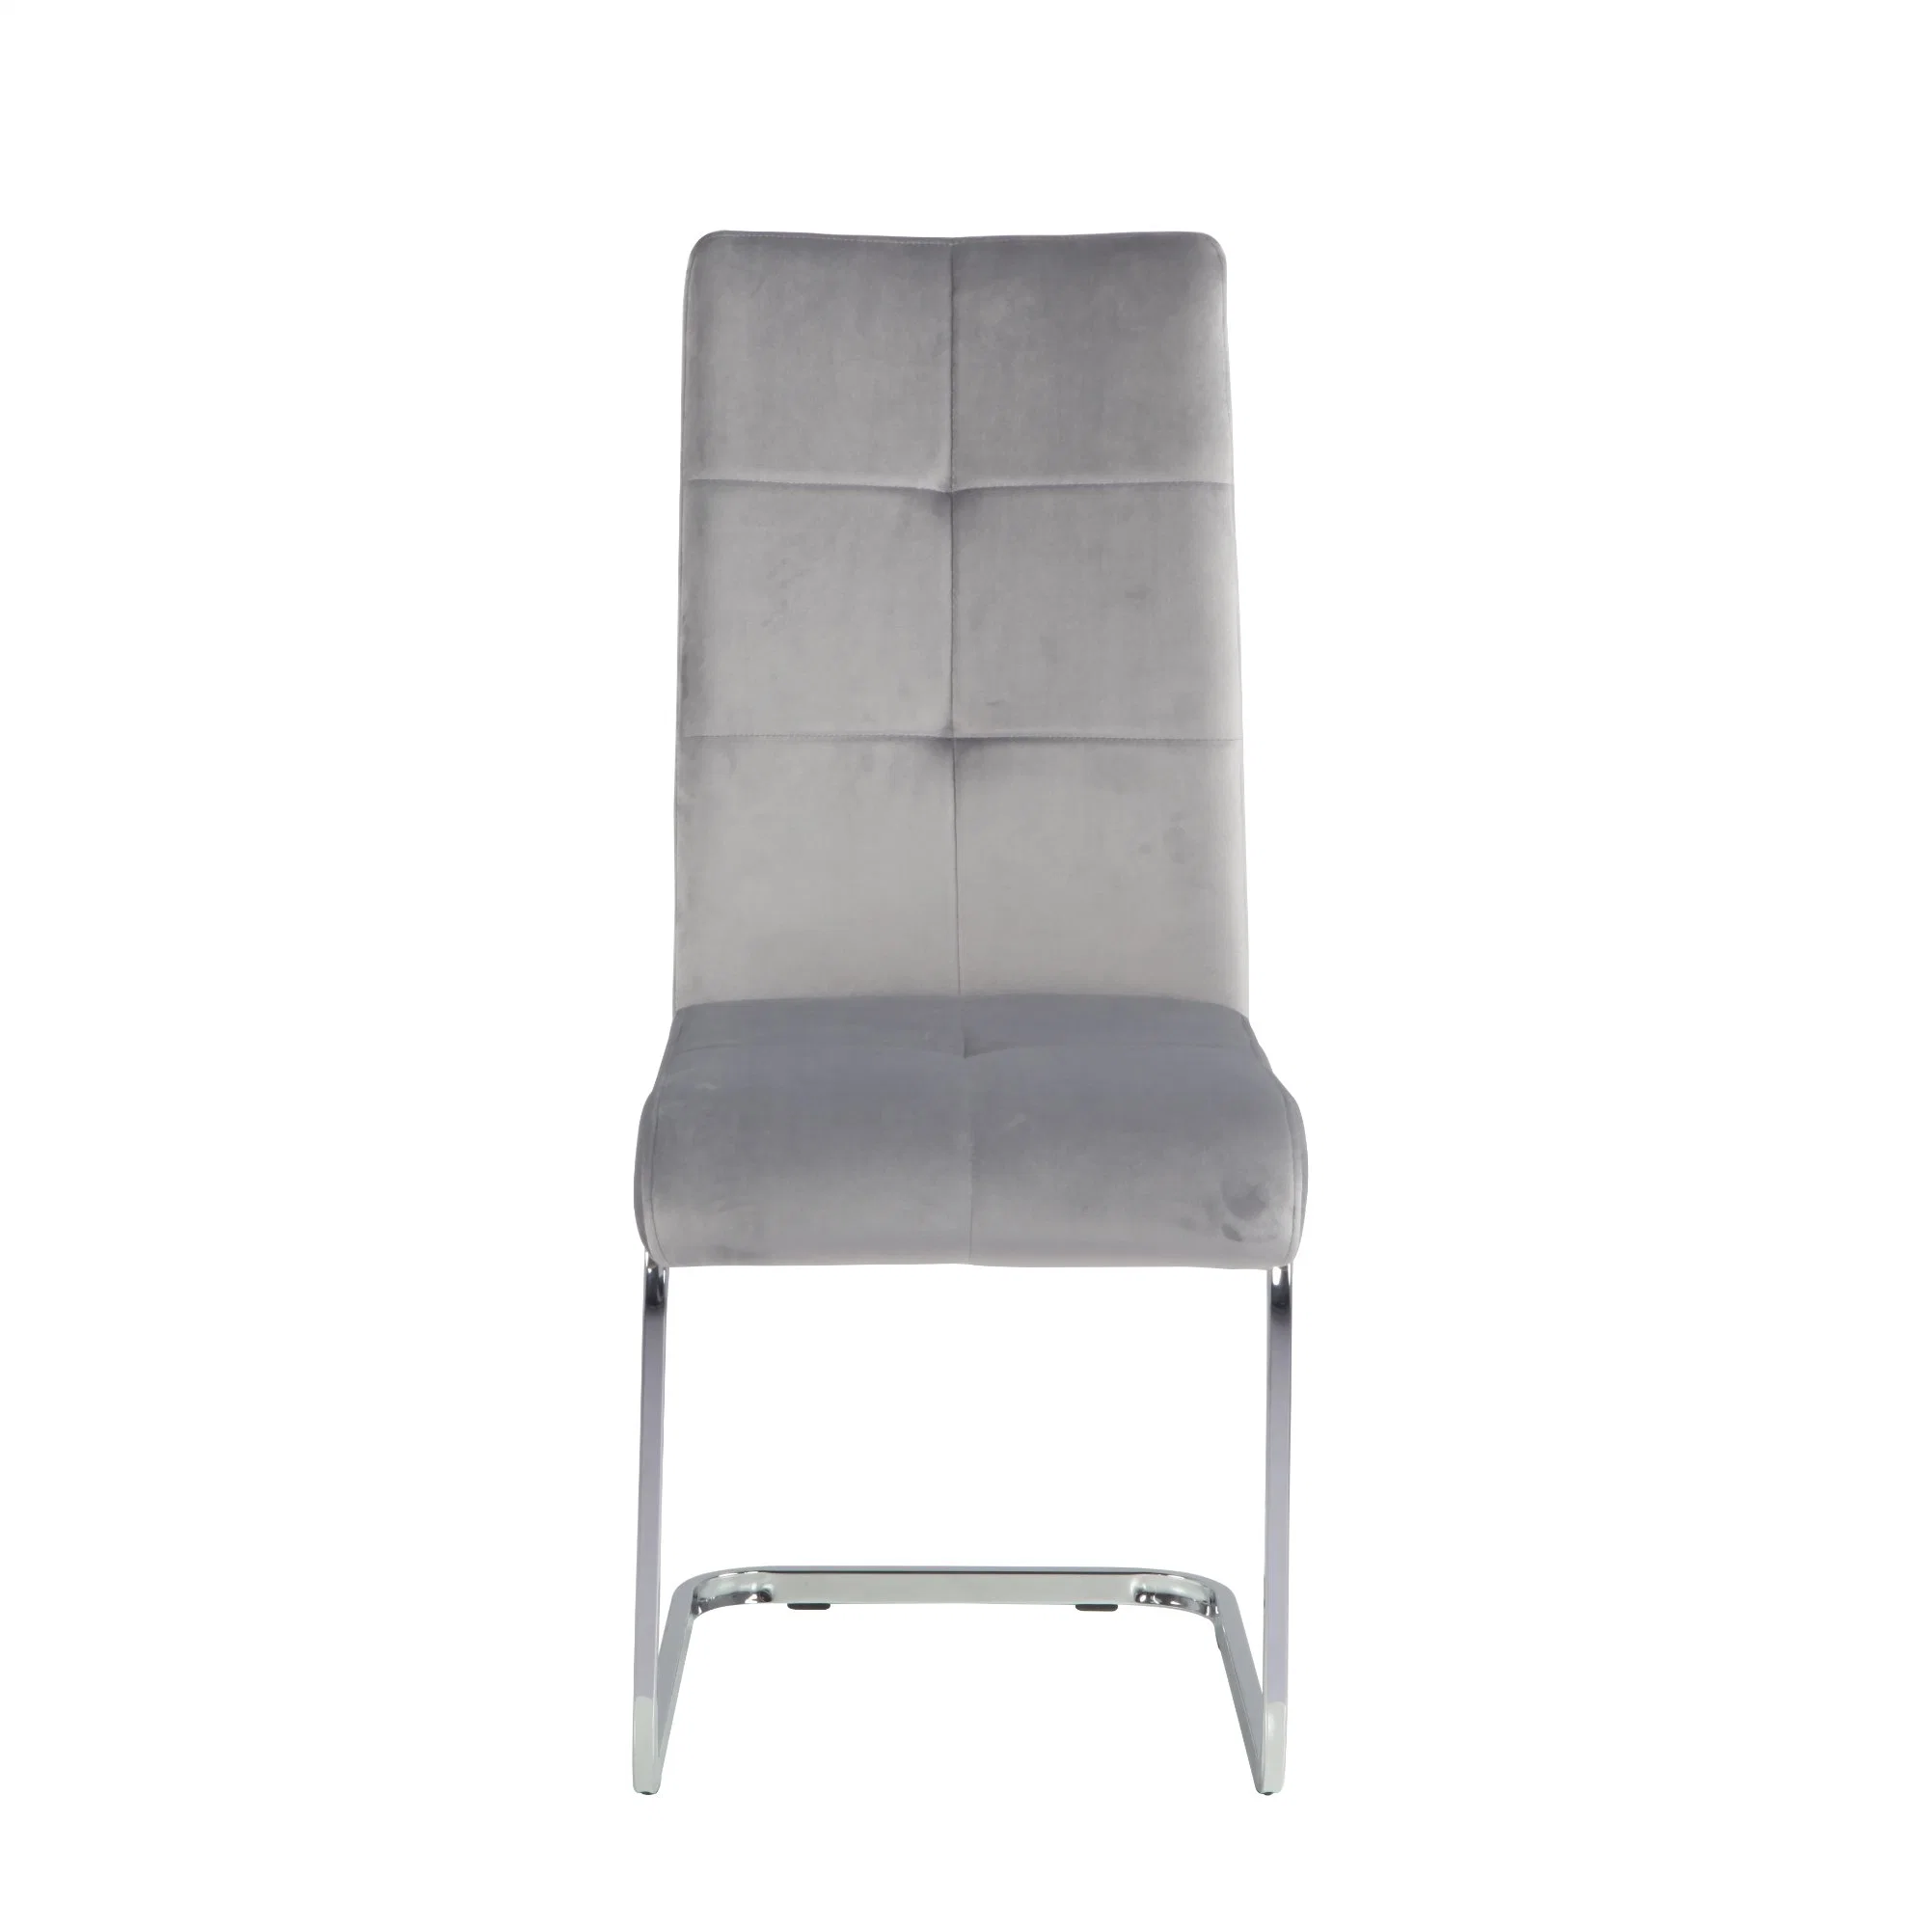 Fashionable PU cromado couro cadeiras de jantar com pernas cromada cadeiras de jantar